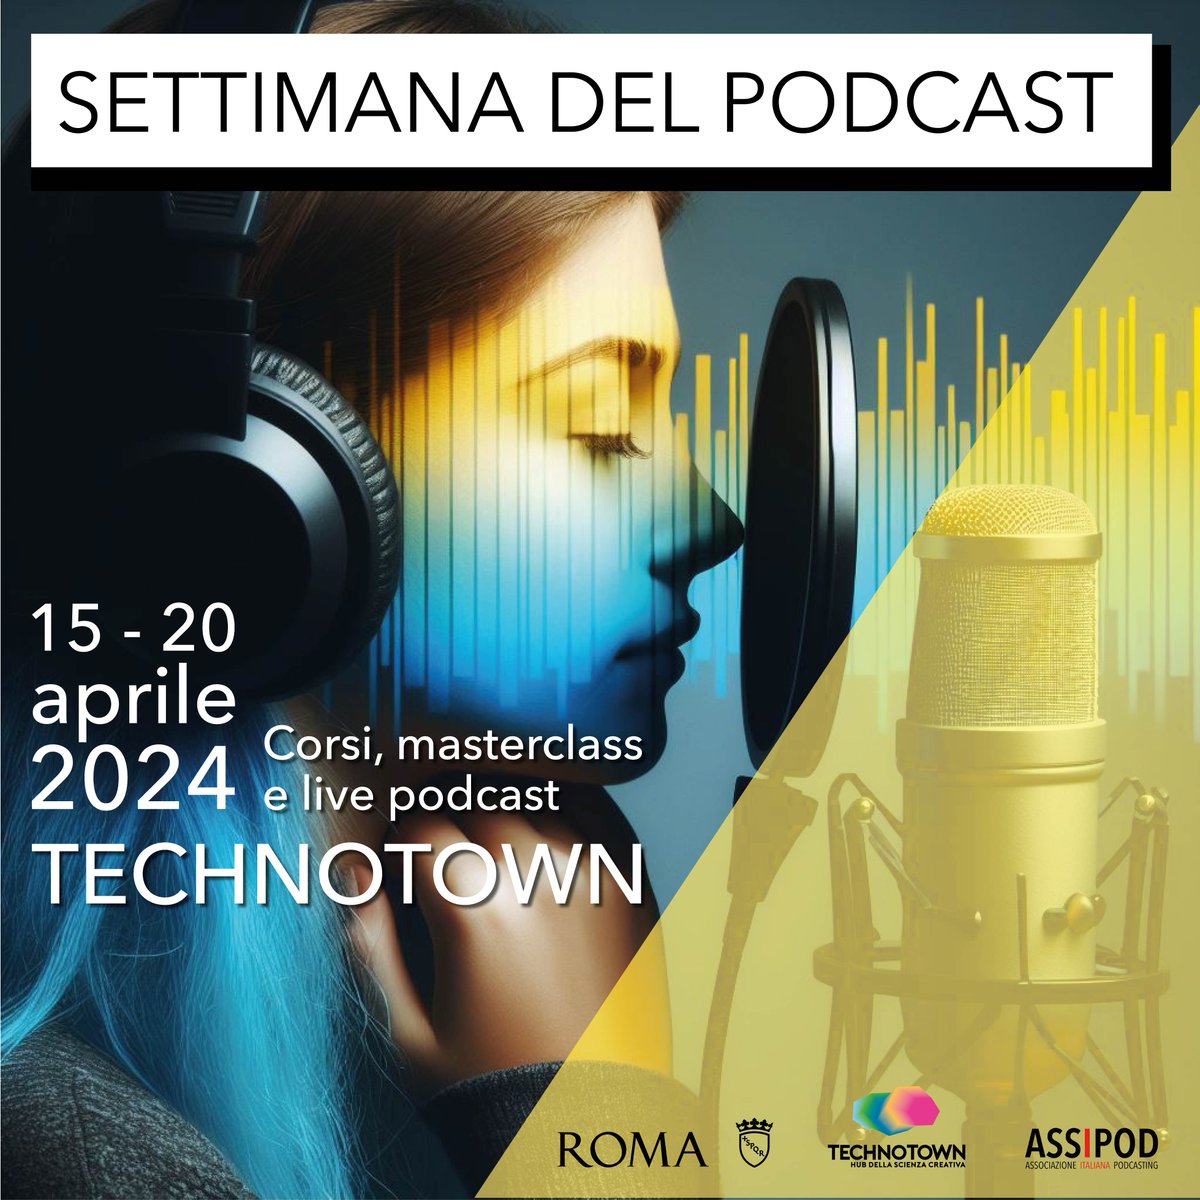 Dal 15 al 20 aprile la @CasadelPodcast di @technotownroma ospita la III edizione della Settimana del Podcast. Nel corso della manifestazione verrà presentato VIECCE! prima serie podcast di @Roma dedicata alla vita nei quartieri: bit.ly/4cU2JVe